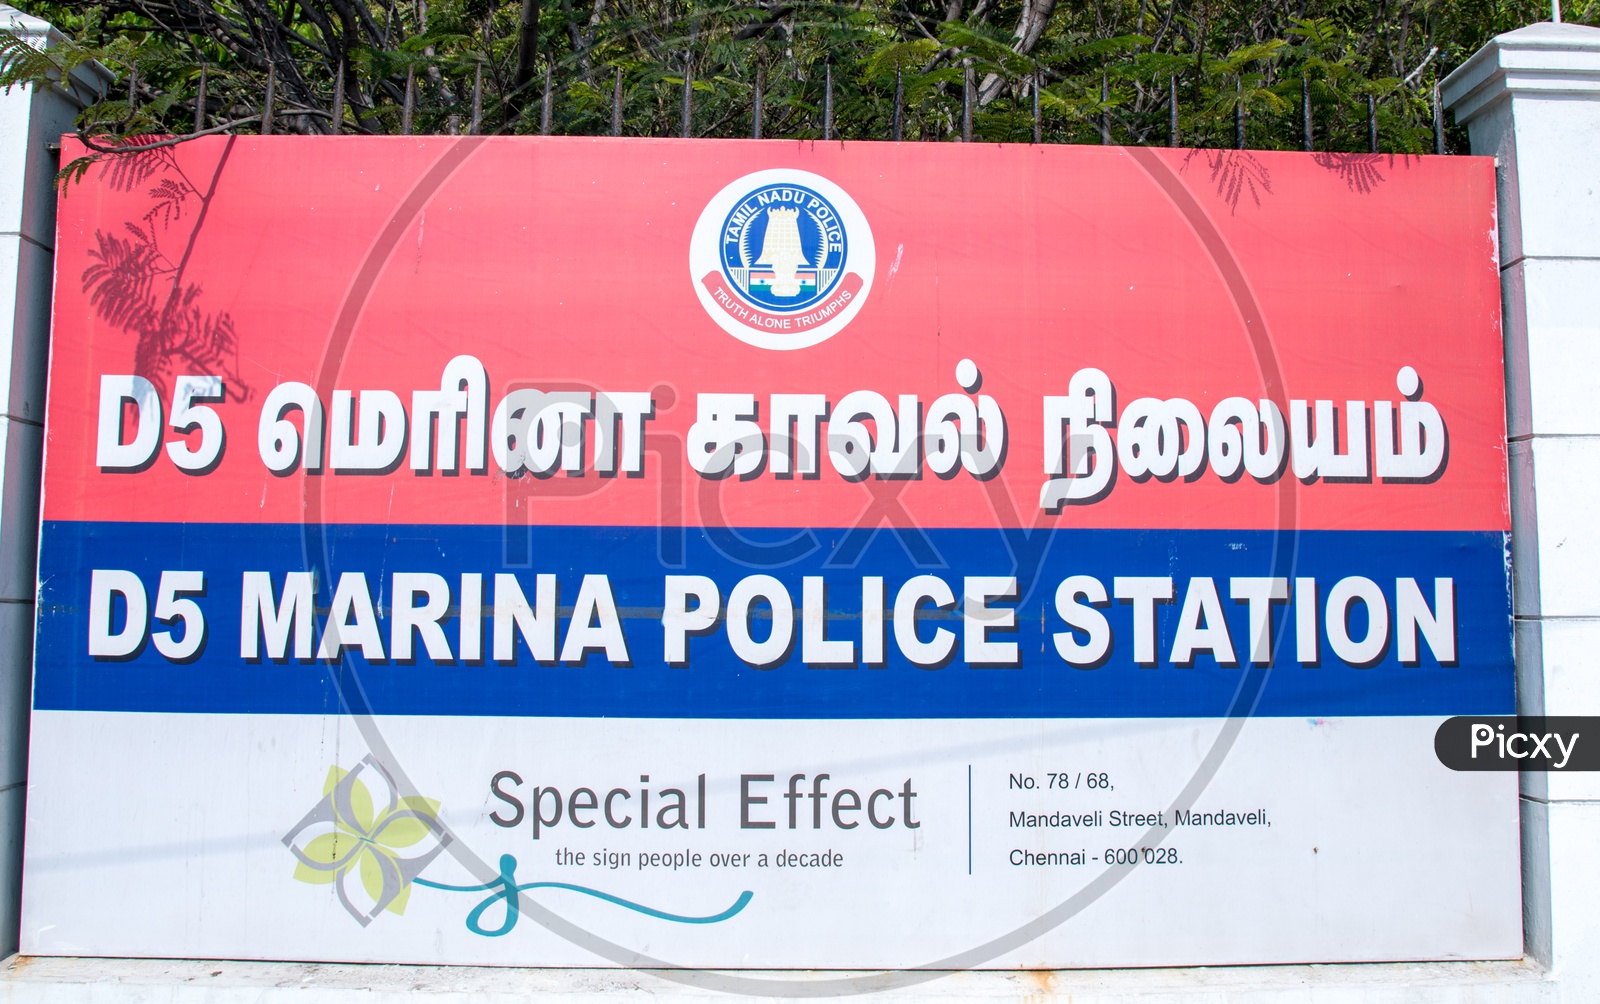 Marina police station